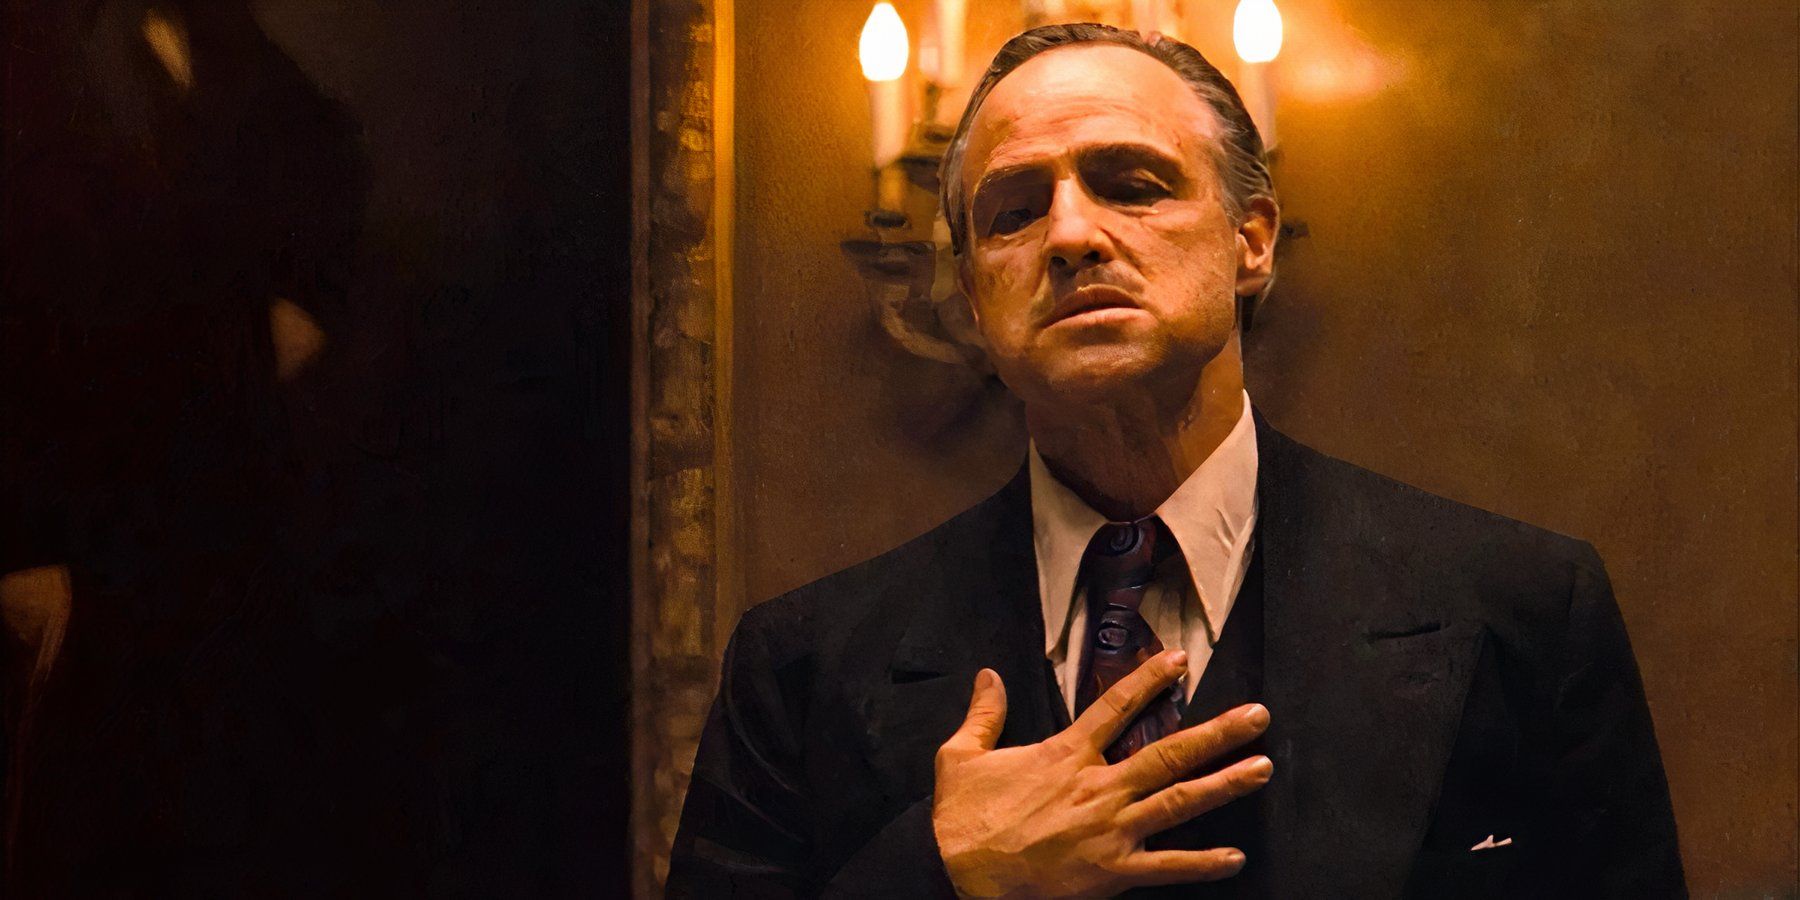 Don Vito Corleone coloca a mão no coração para um voto sombrio em O Poderoso Chefão.